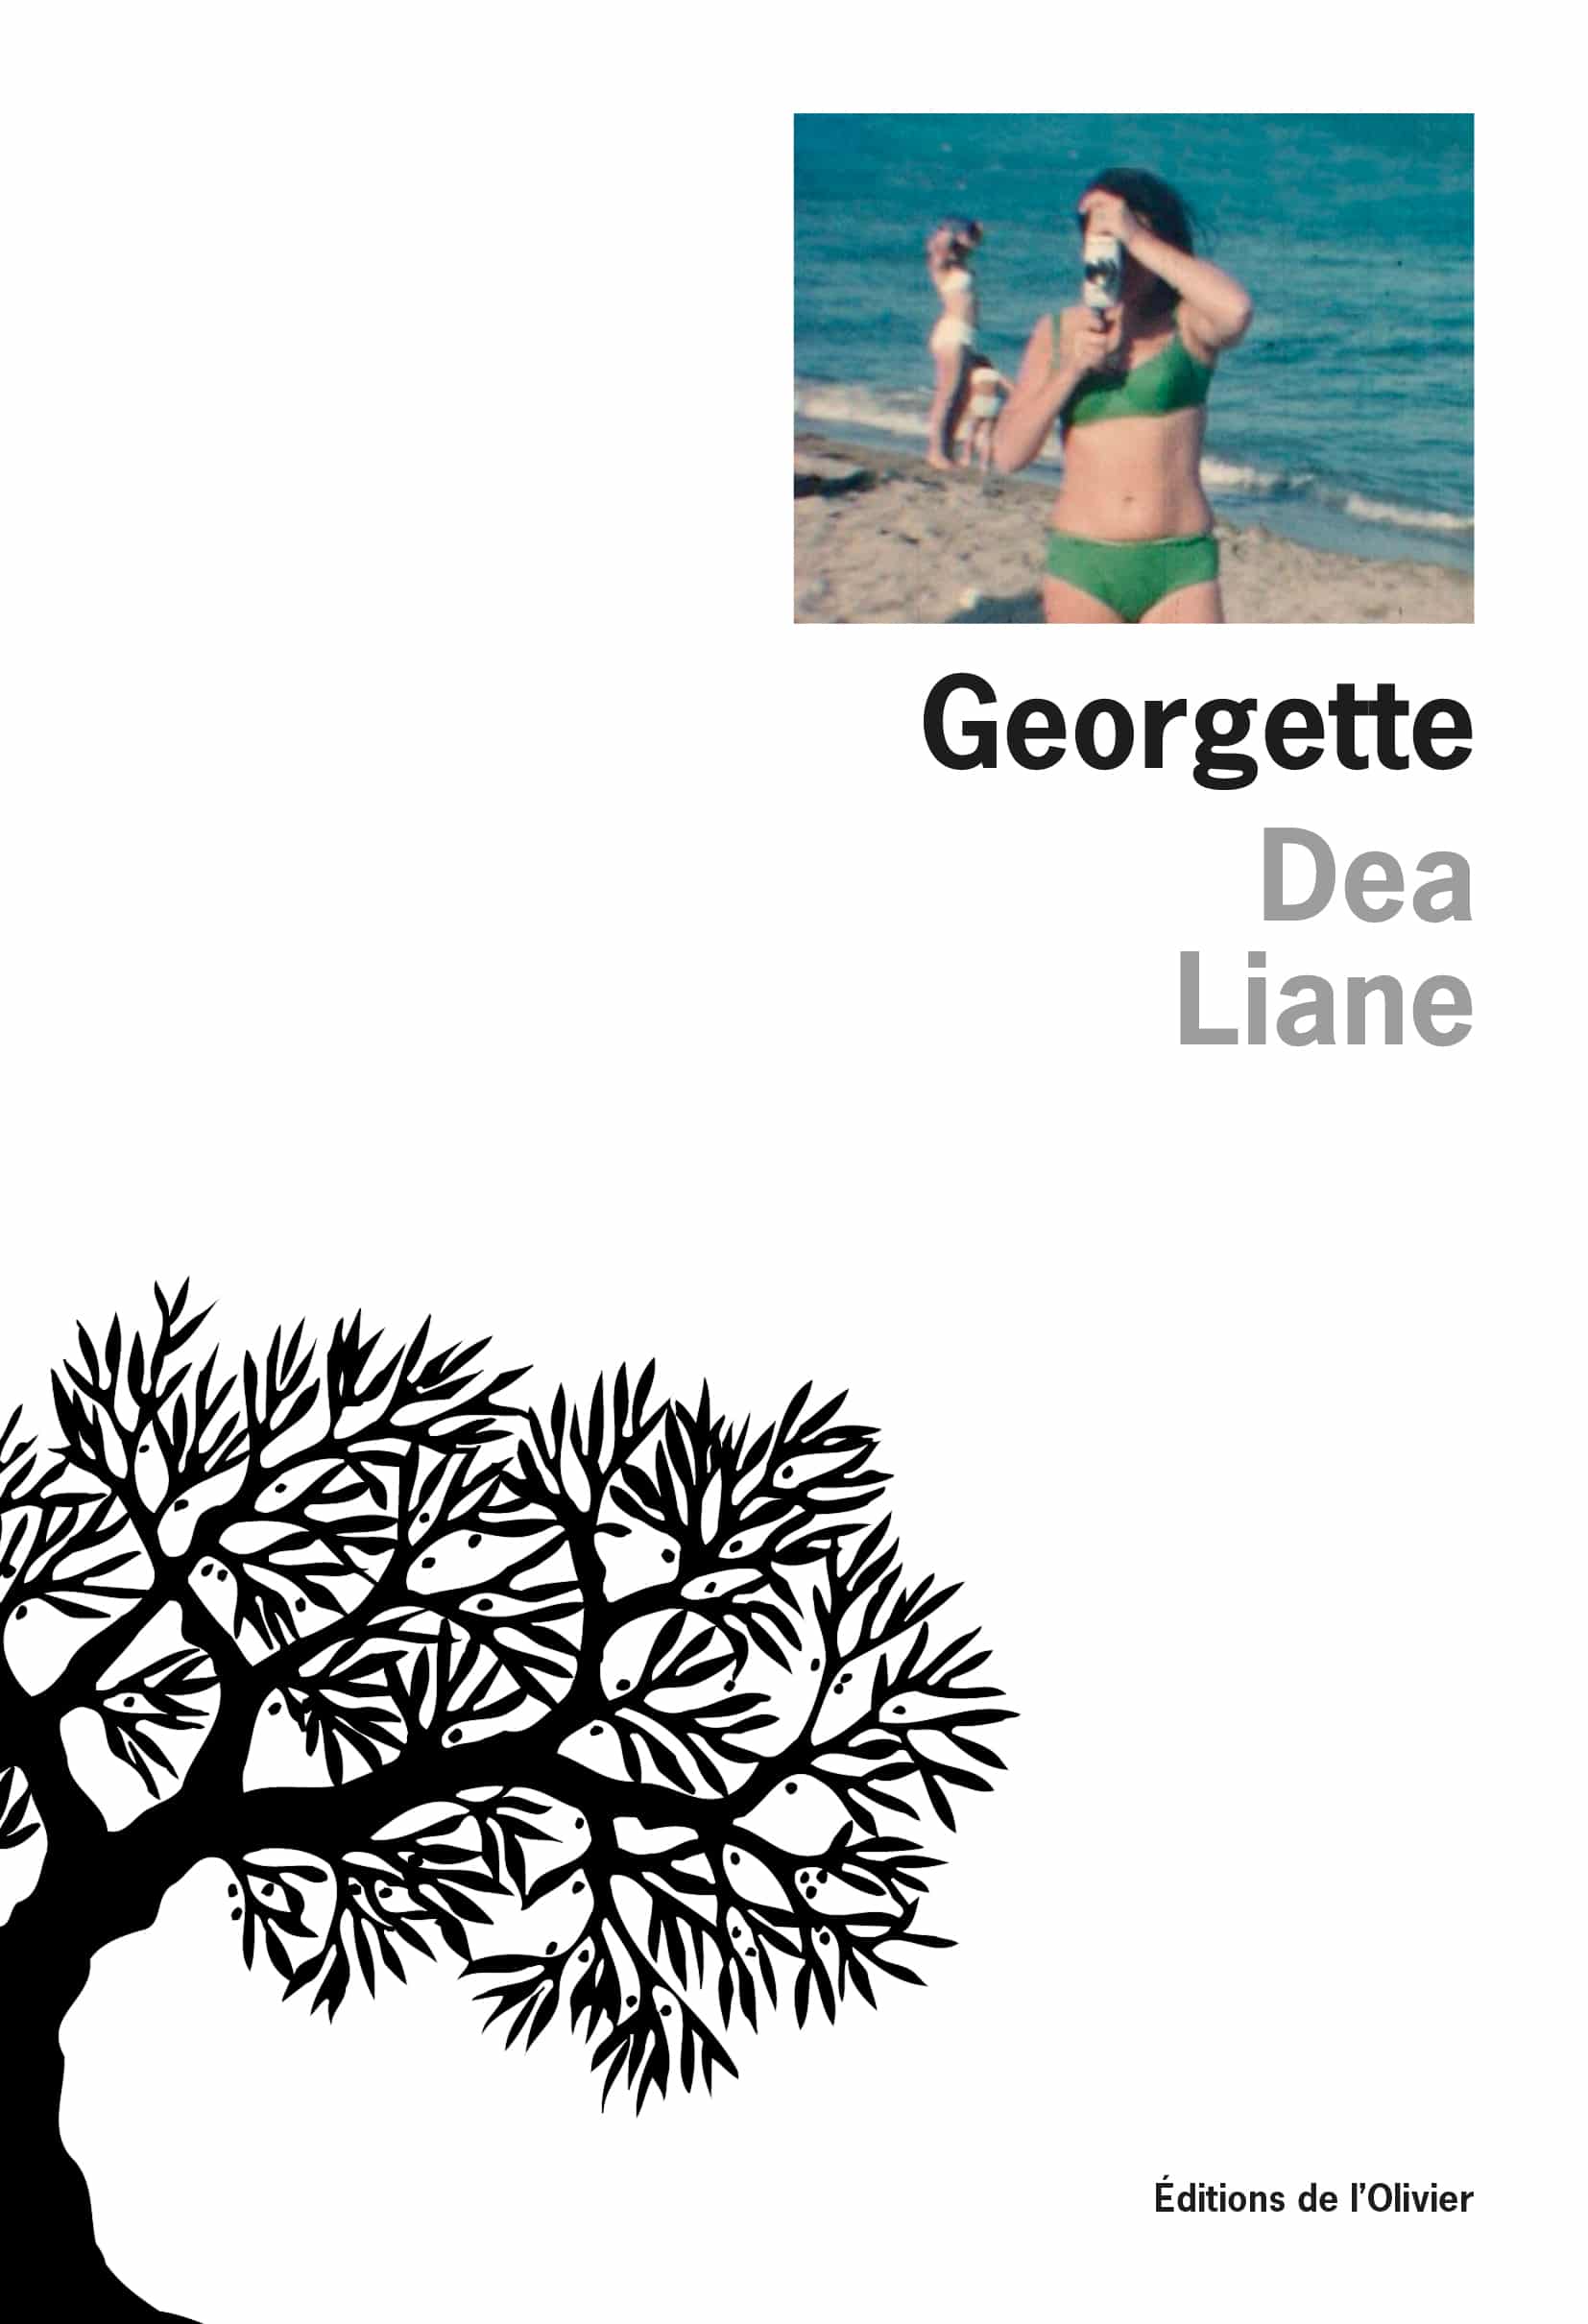 Couverture de "Georgette", de Dea Liane © L'olivier